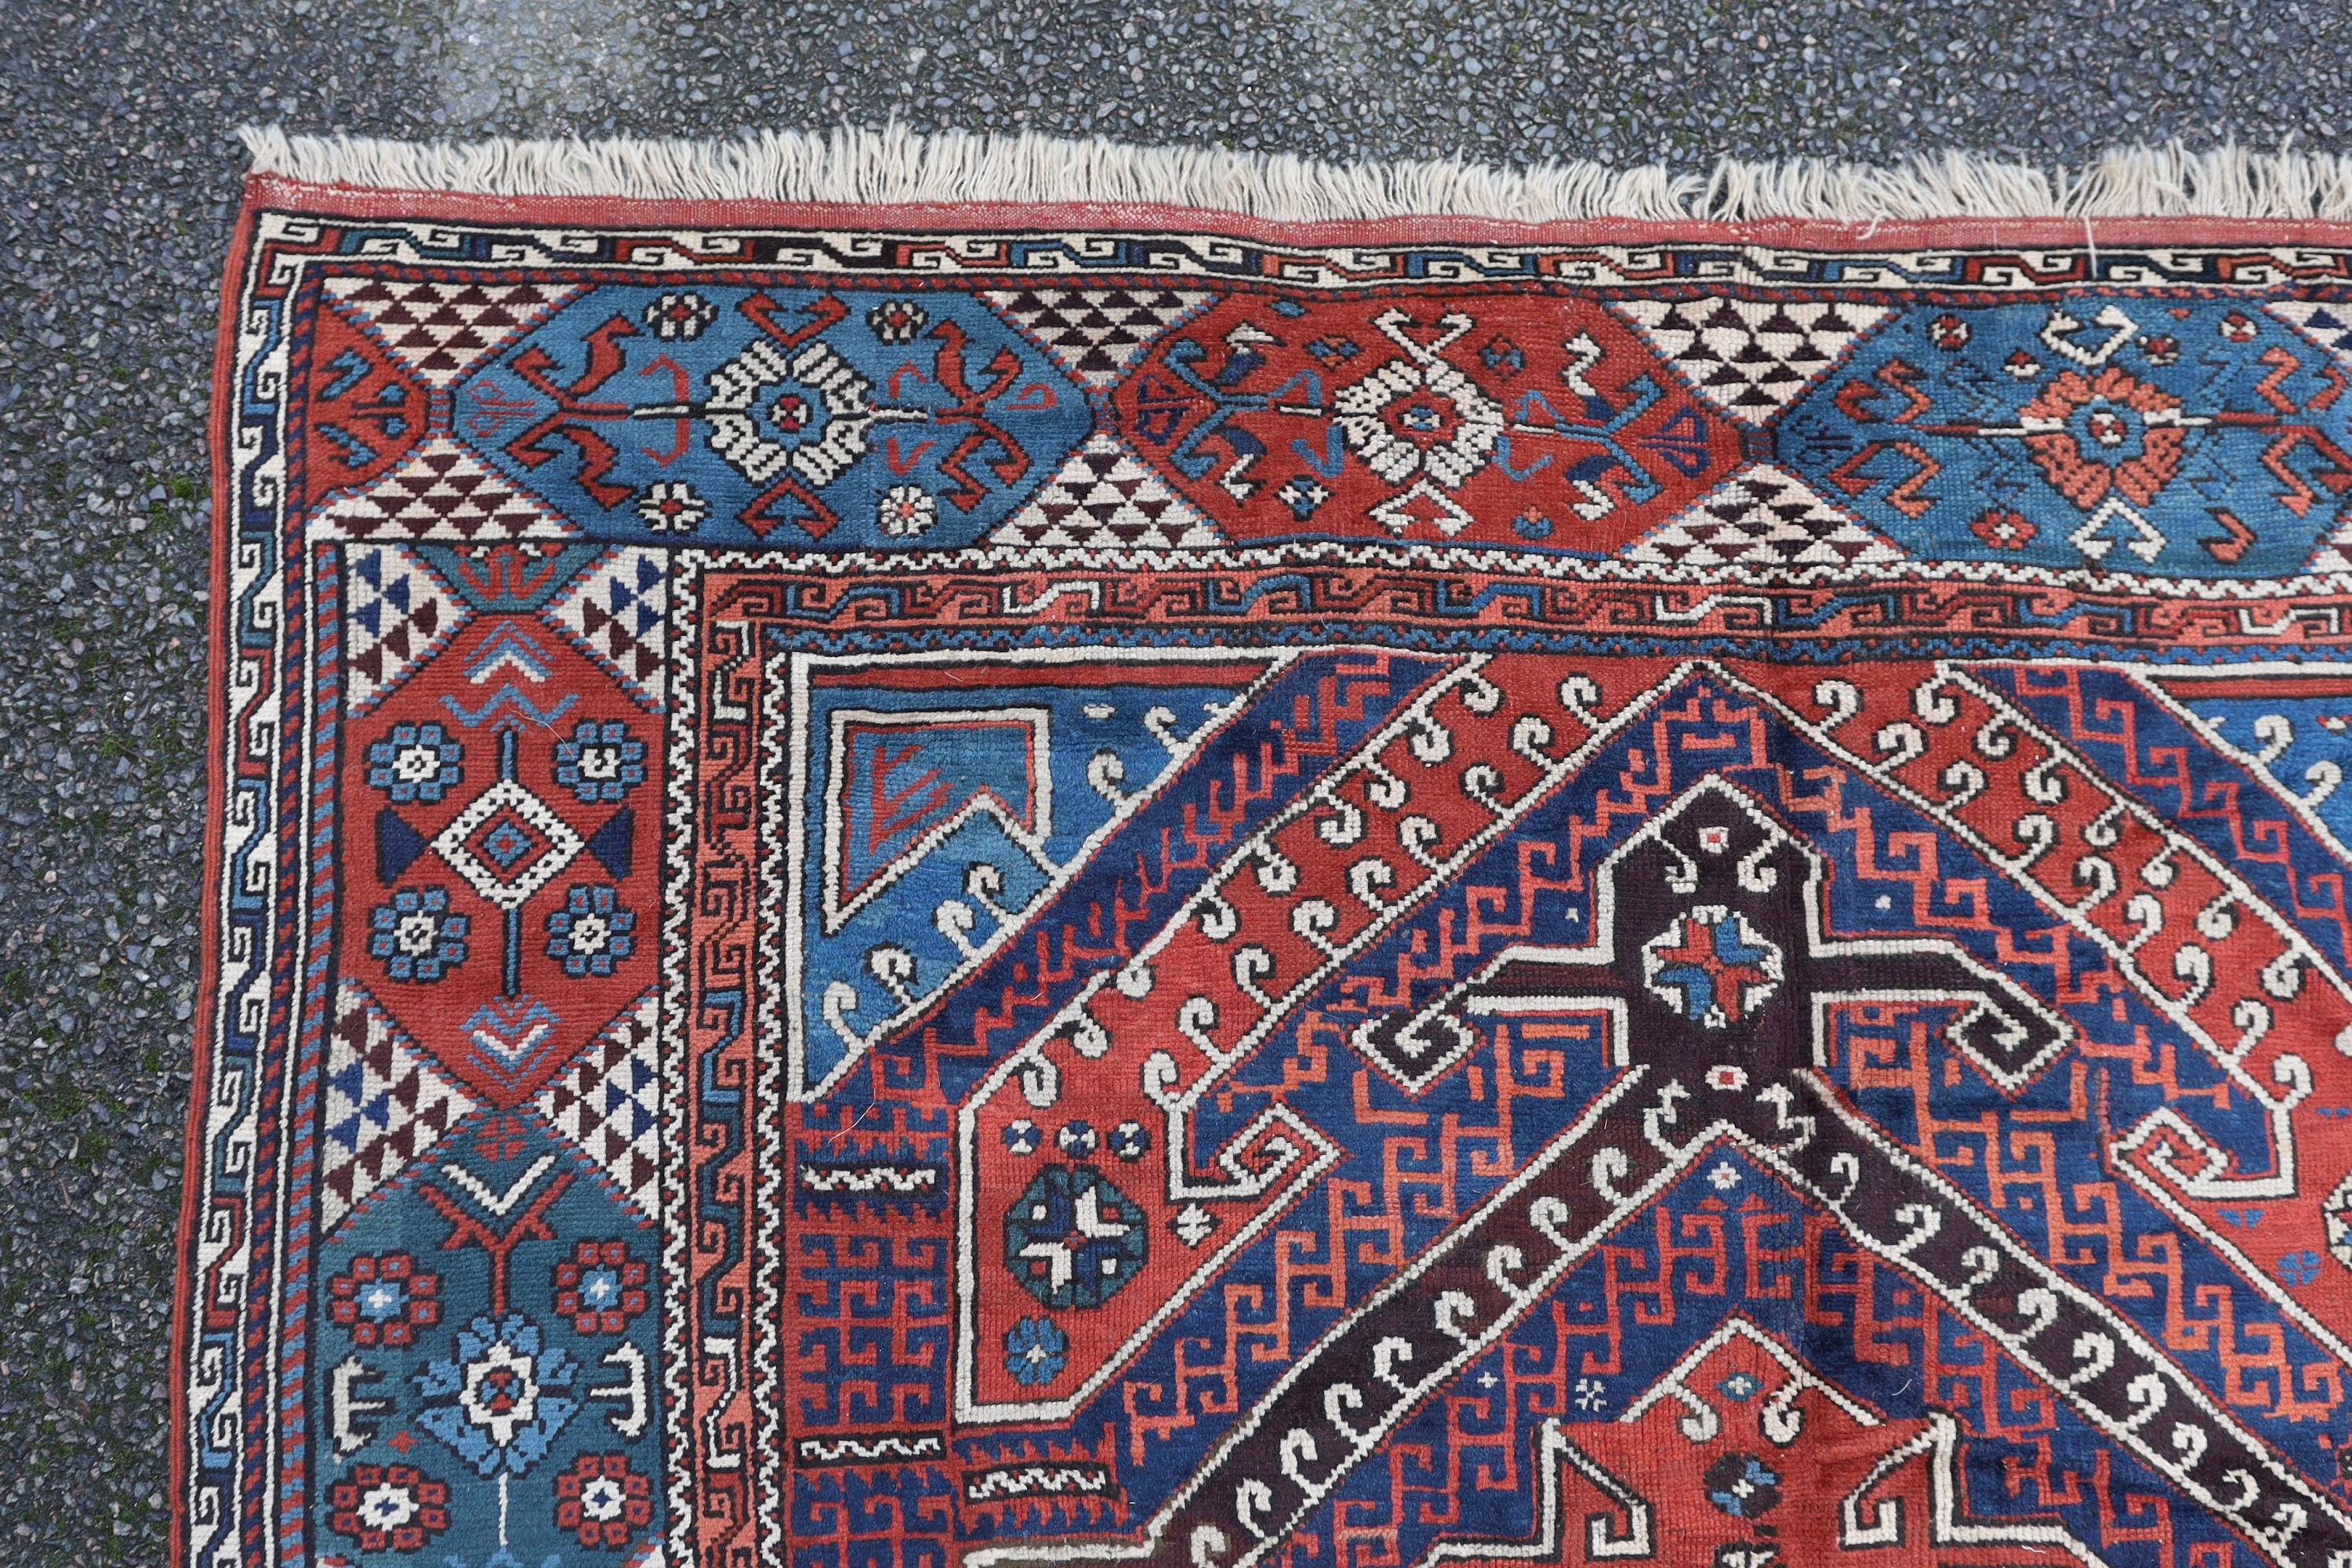 A Bergam Turkish blue ground rug 254 x 198cm